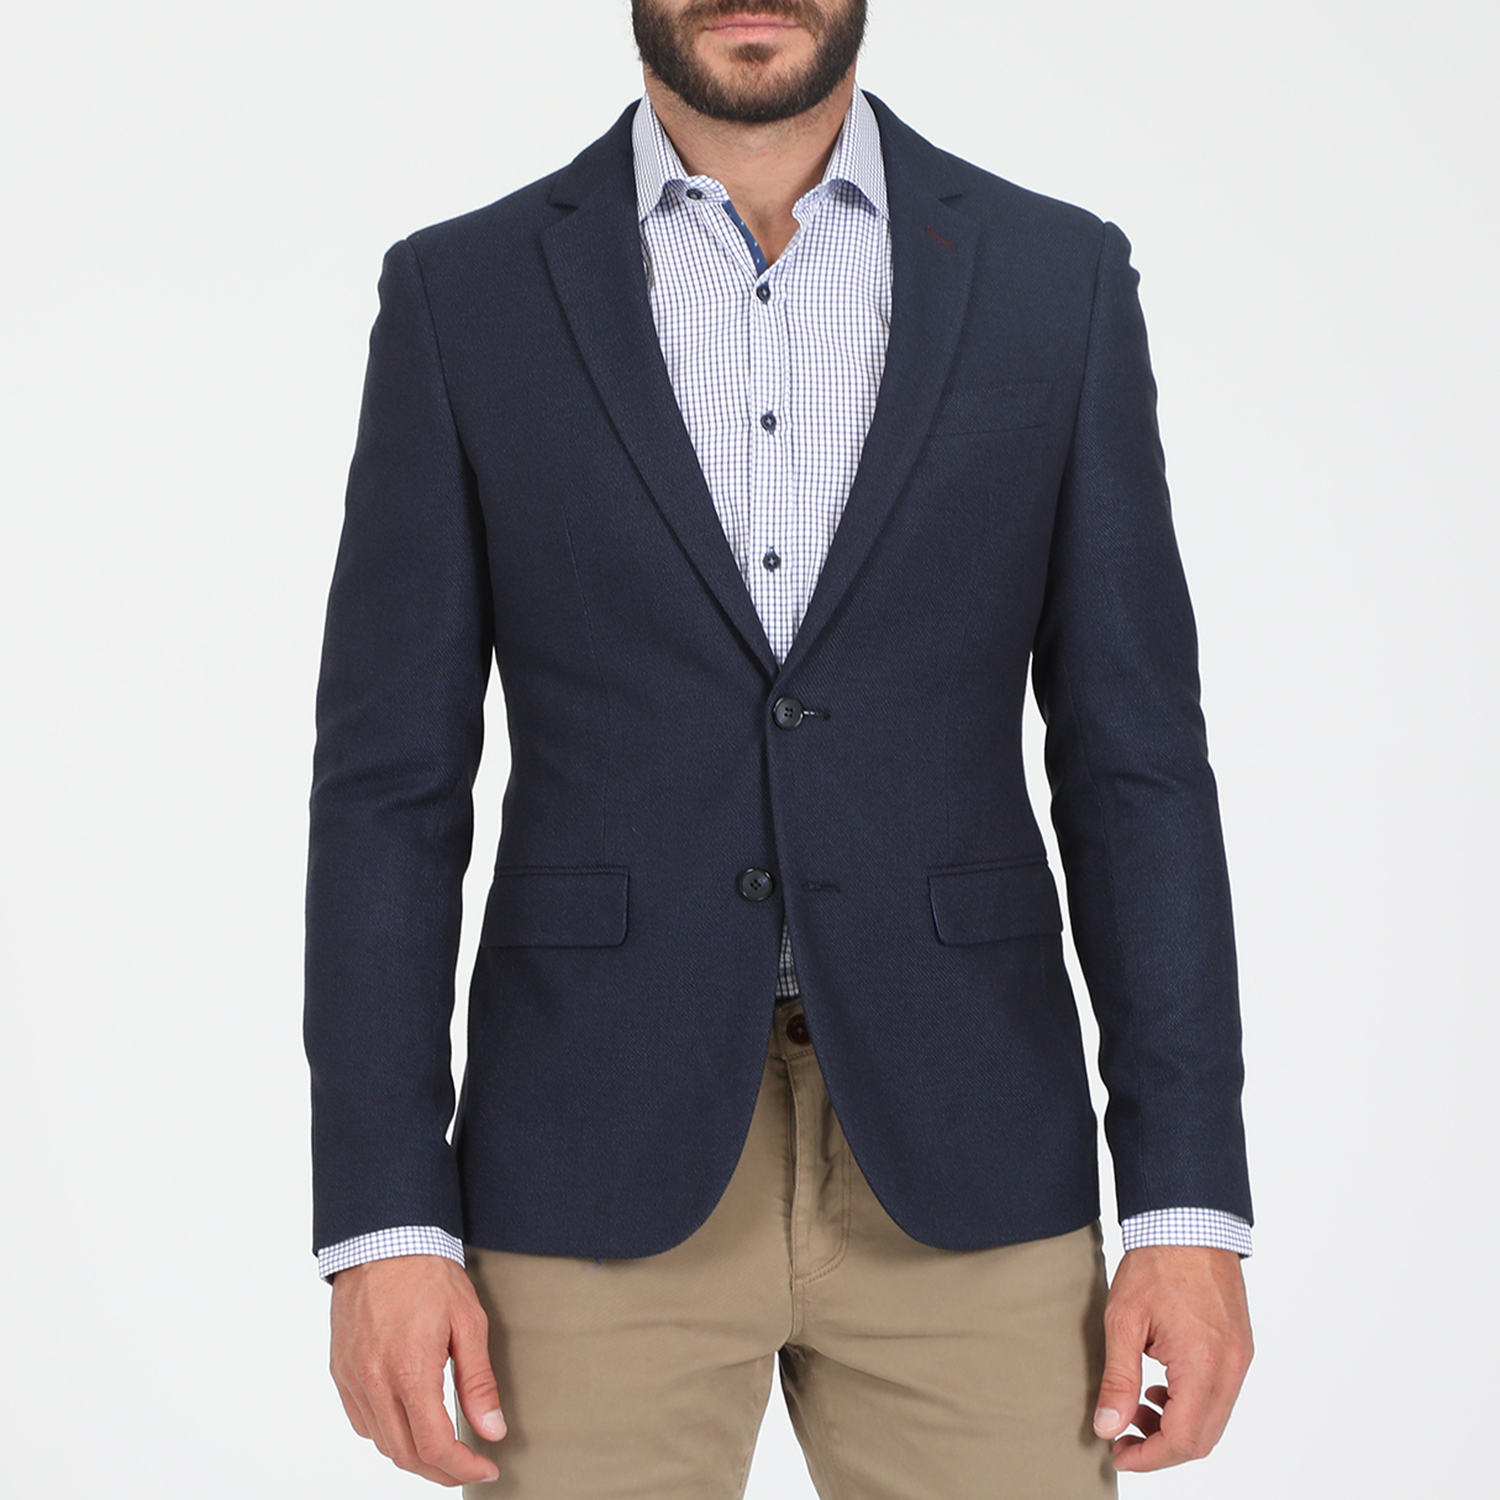 Ανδρικά/Ρούχα/Πανωφόρια/Σακάκια MARTIN & CO - Ανδρικό σακάκι MARTIN & CO SLIM BLAZER μπλε